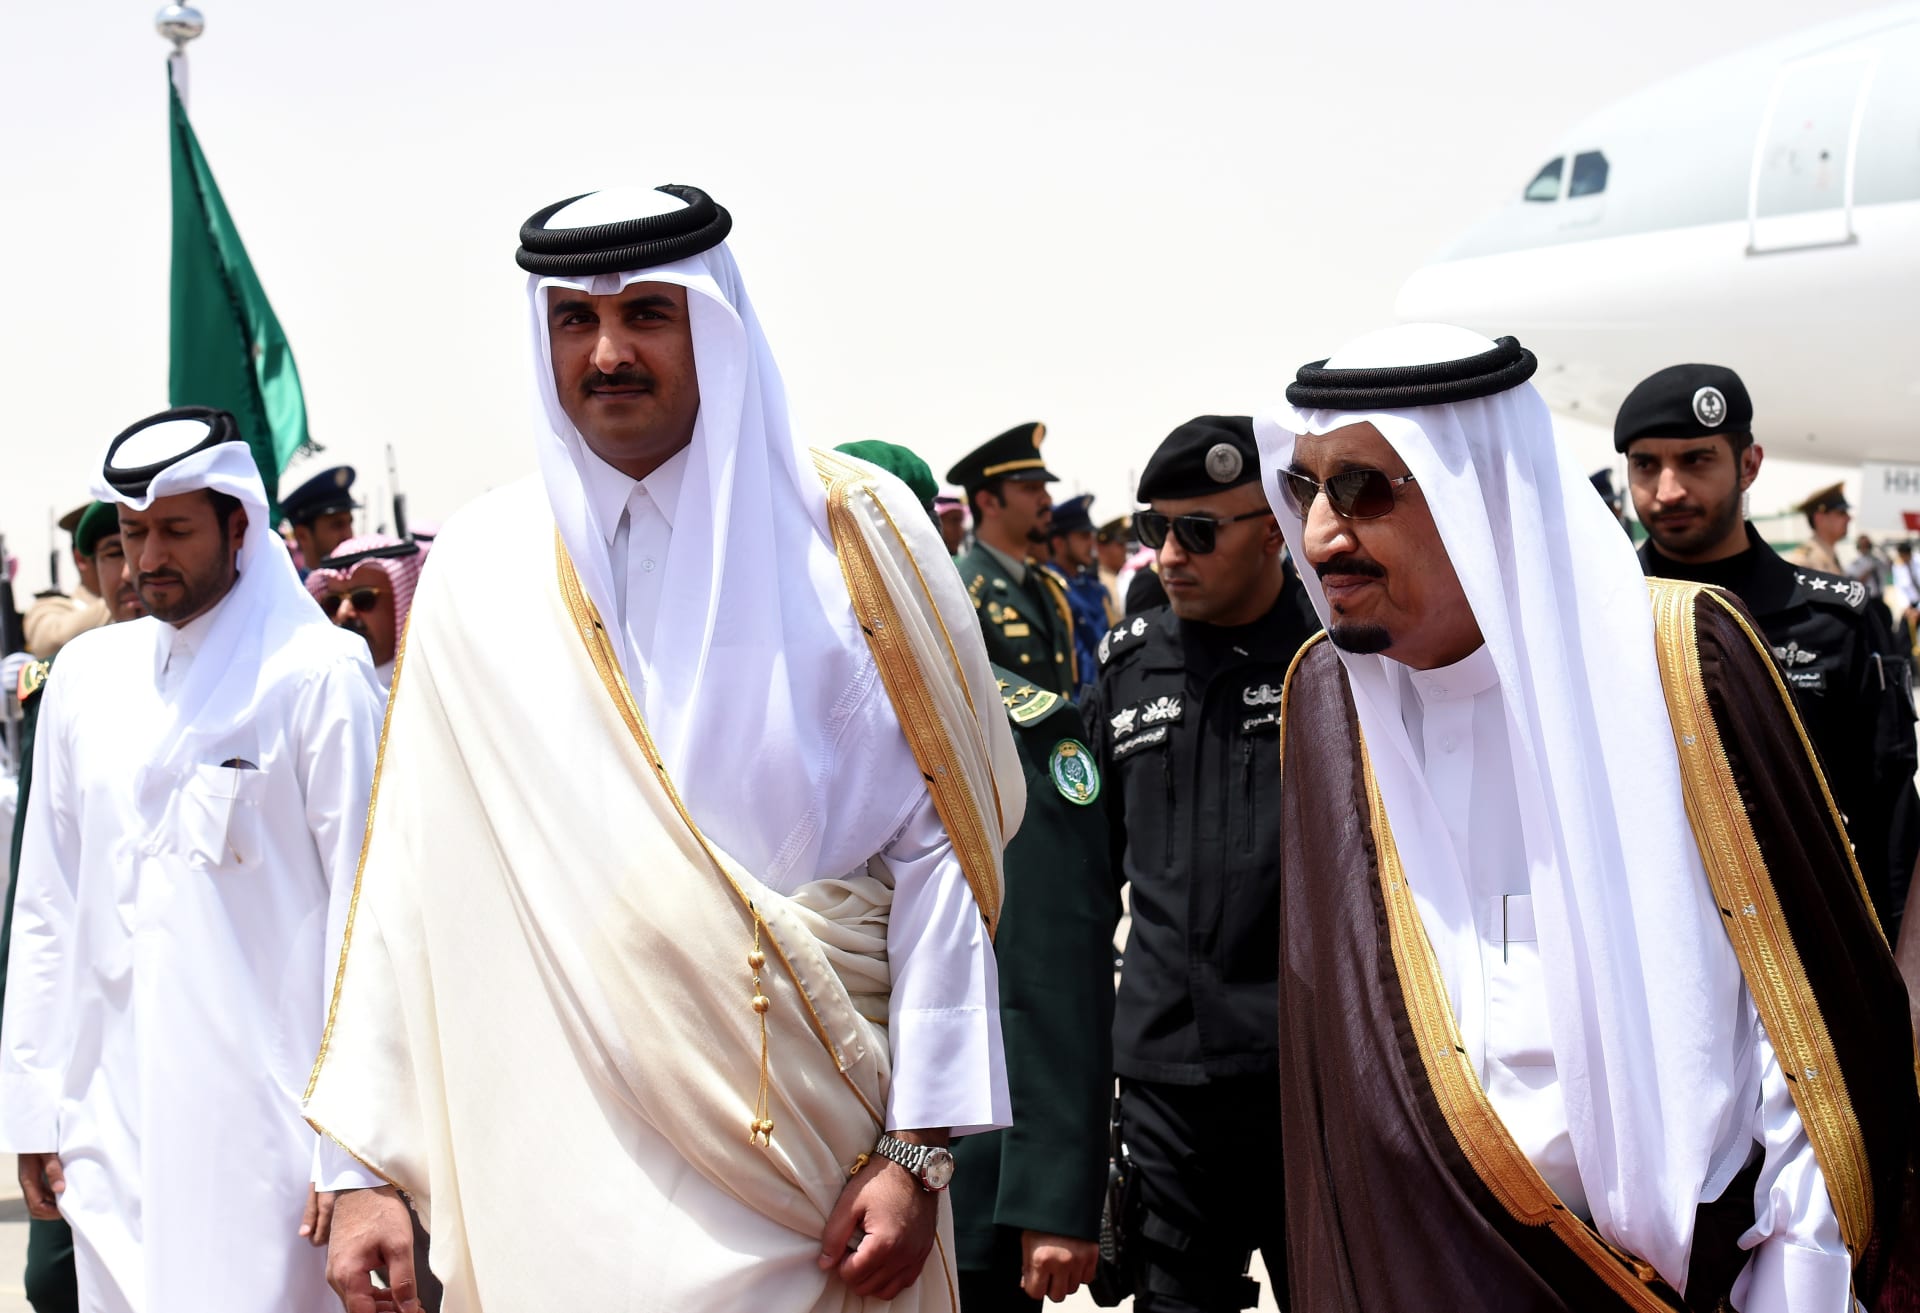 صورة أرشيفية من زيارة لأمير قطر إلى السعودية واستقباله من قبل الملك سلمان العام 2015